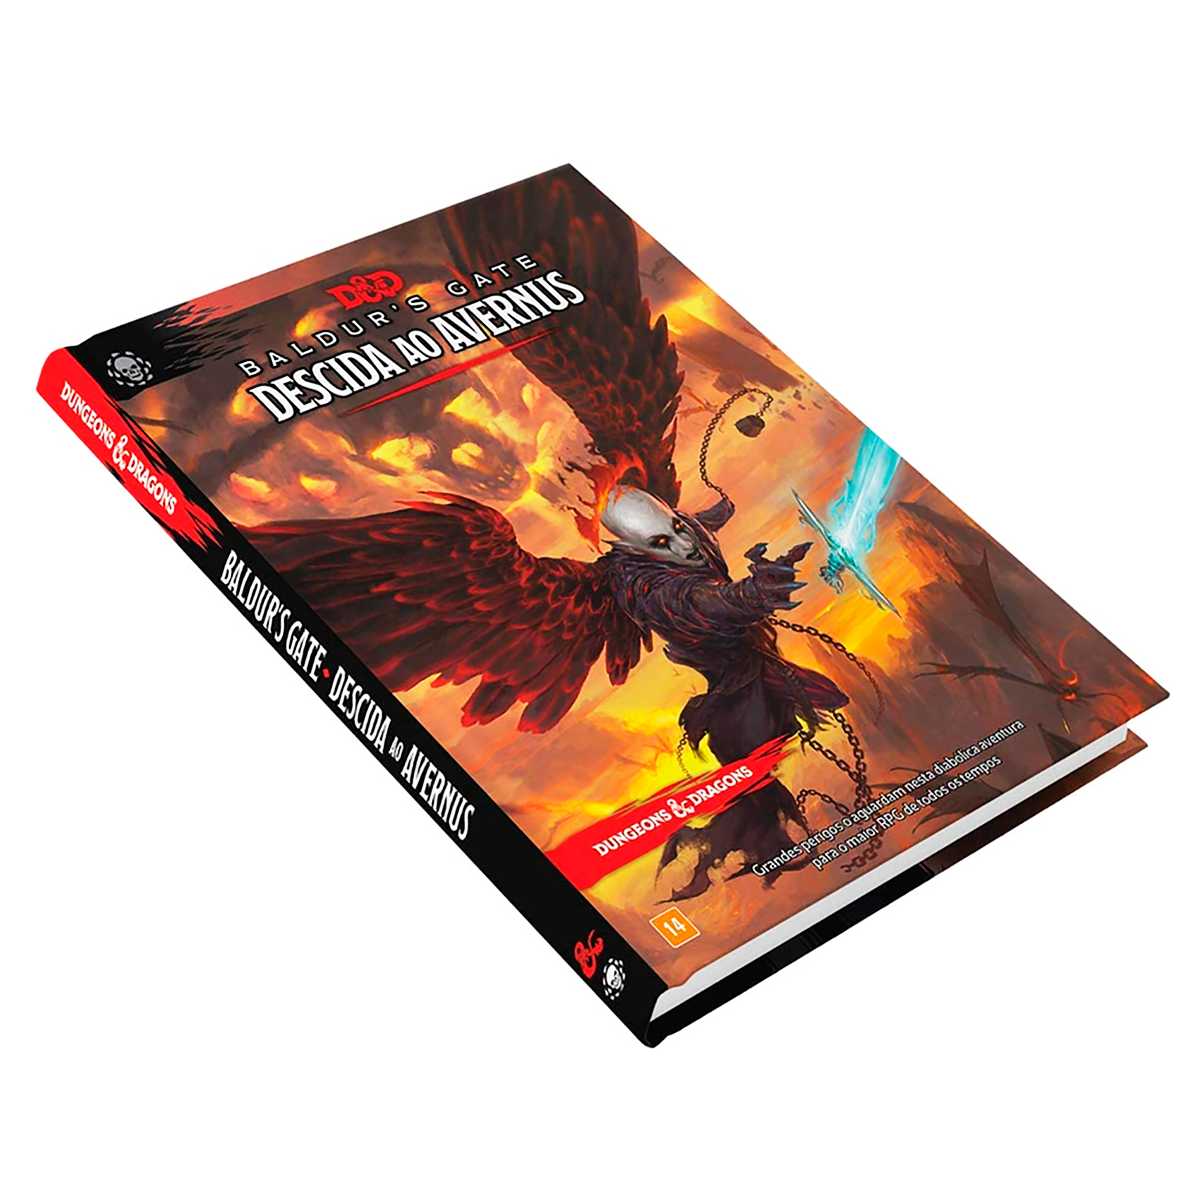 Livro Dungeons Dragons Descent Into - Descida ao Avernus